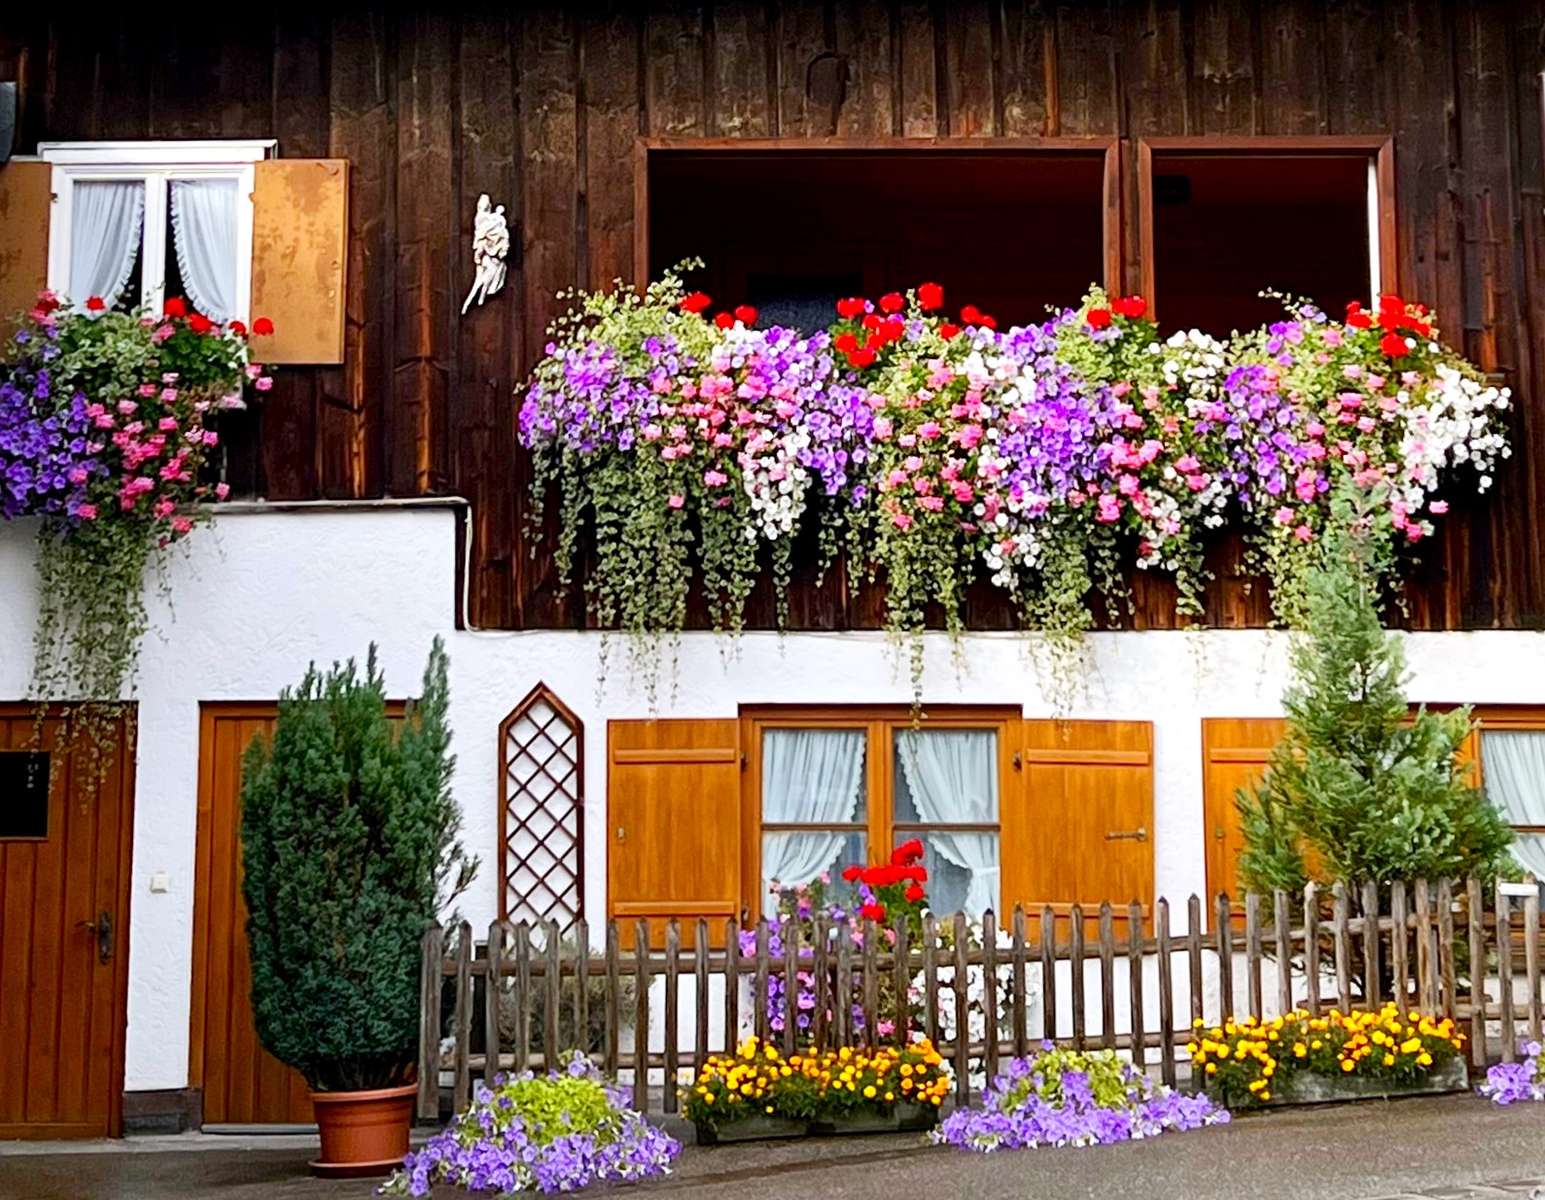 Het huis is prachtig versierd met bloemen legpuzzel online